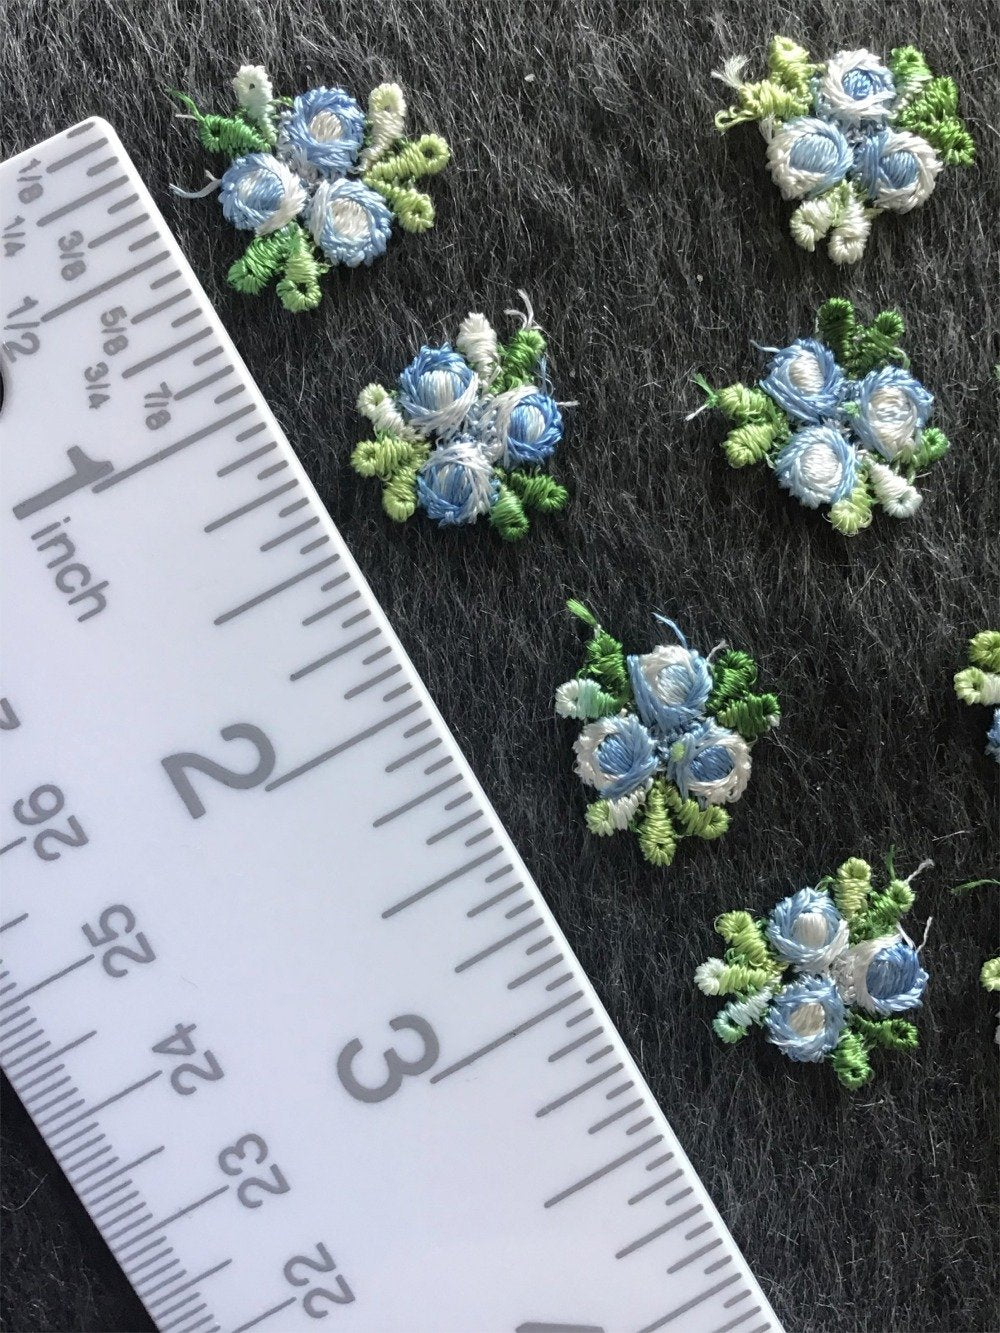 Vintage Blue White Floral Decorative Applique Patches #5047